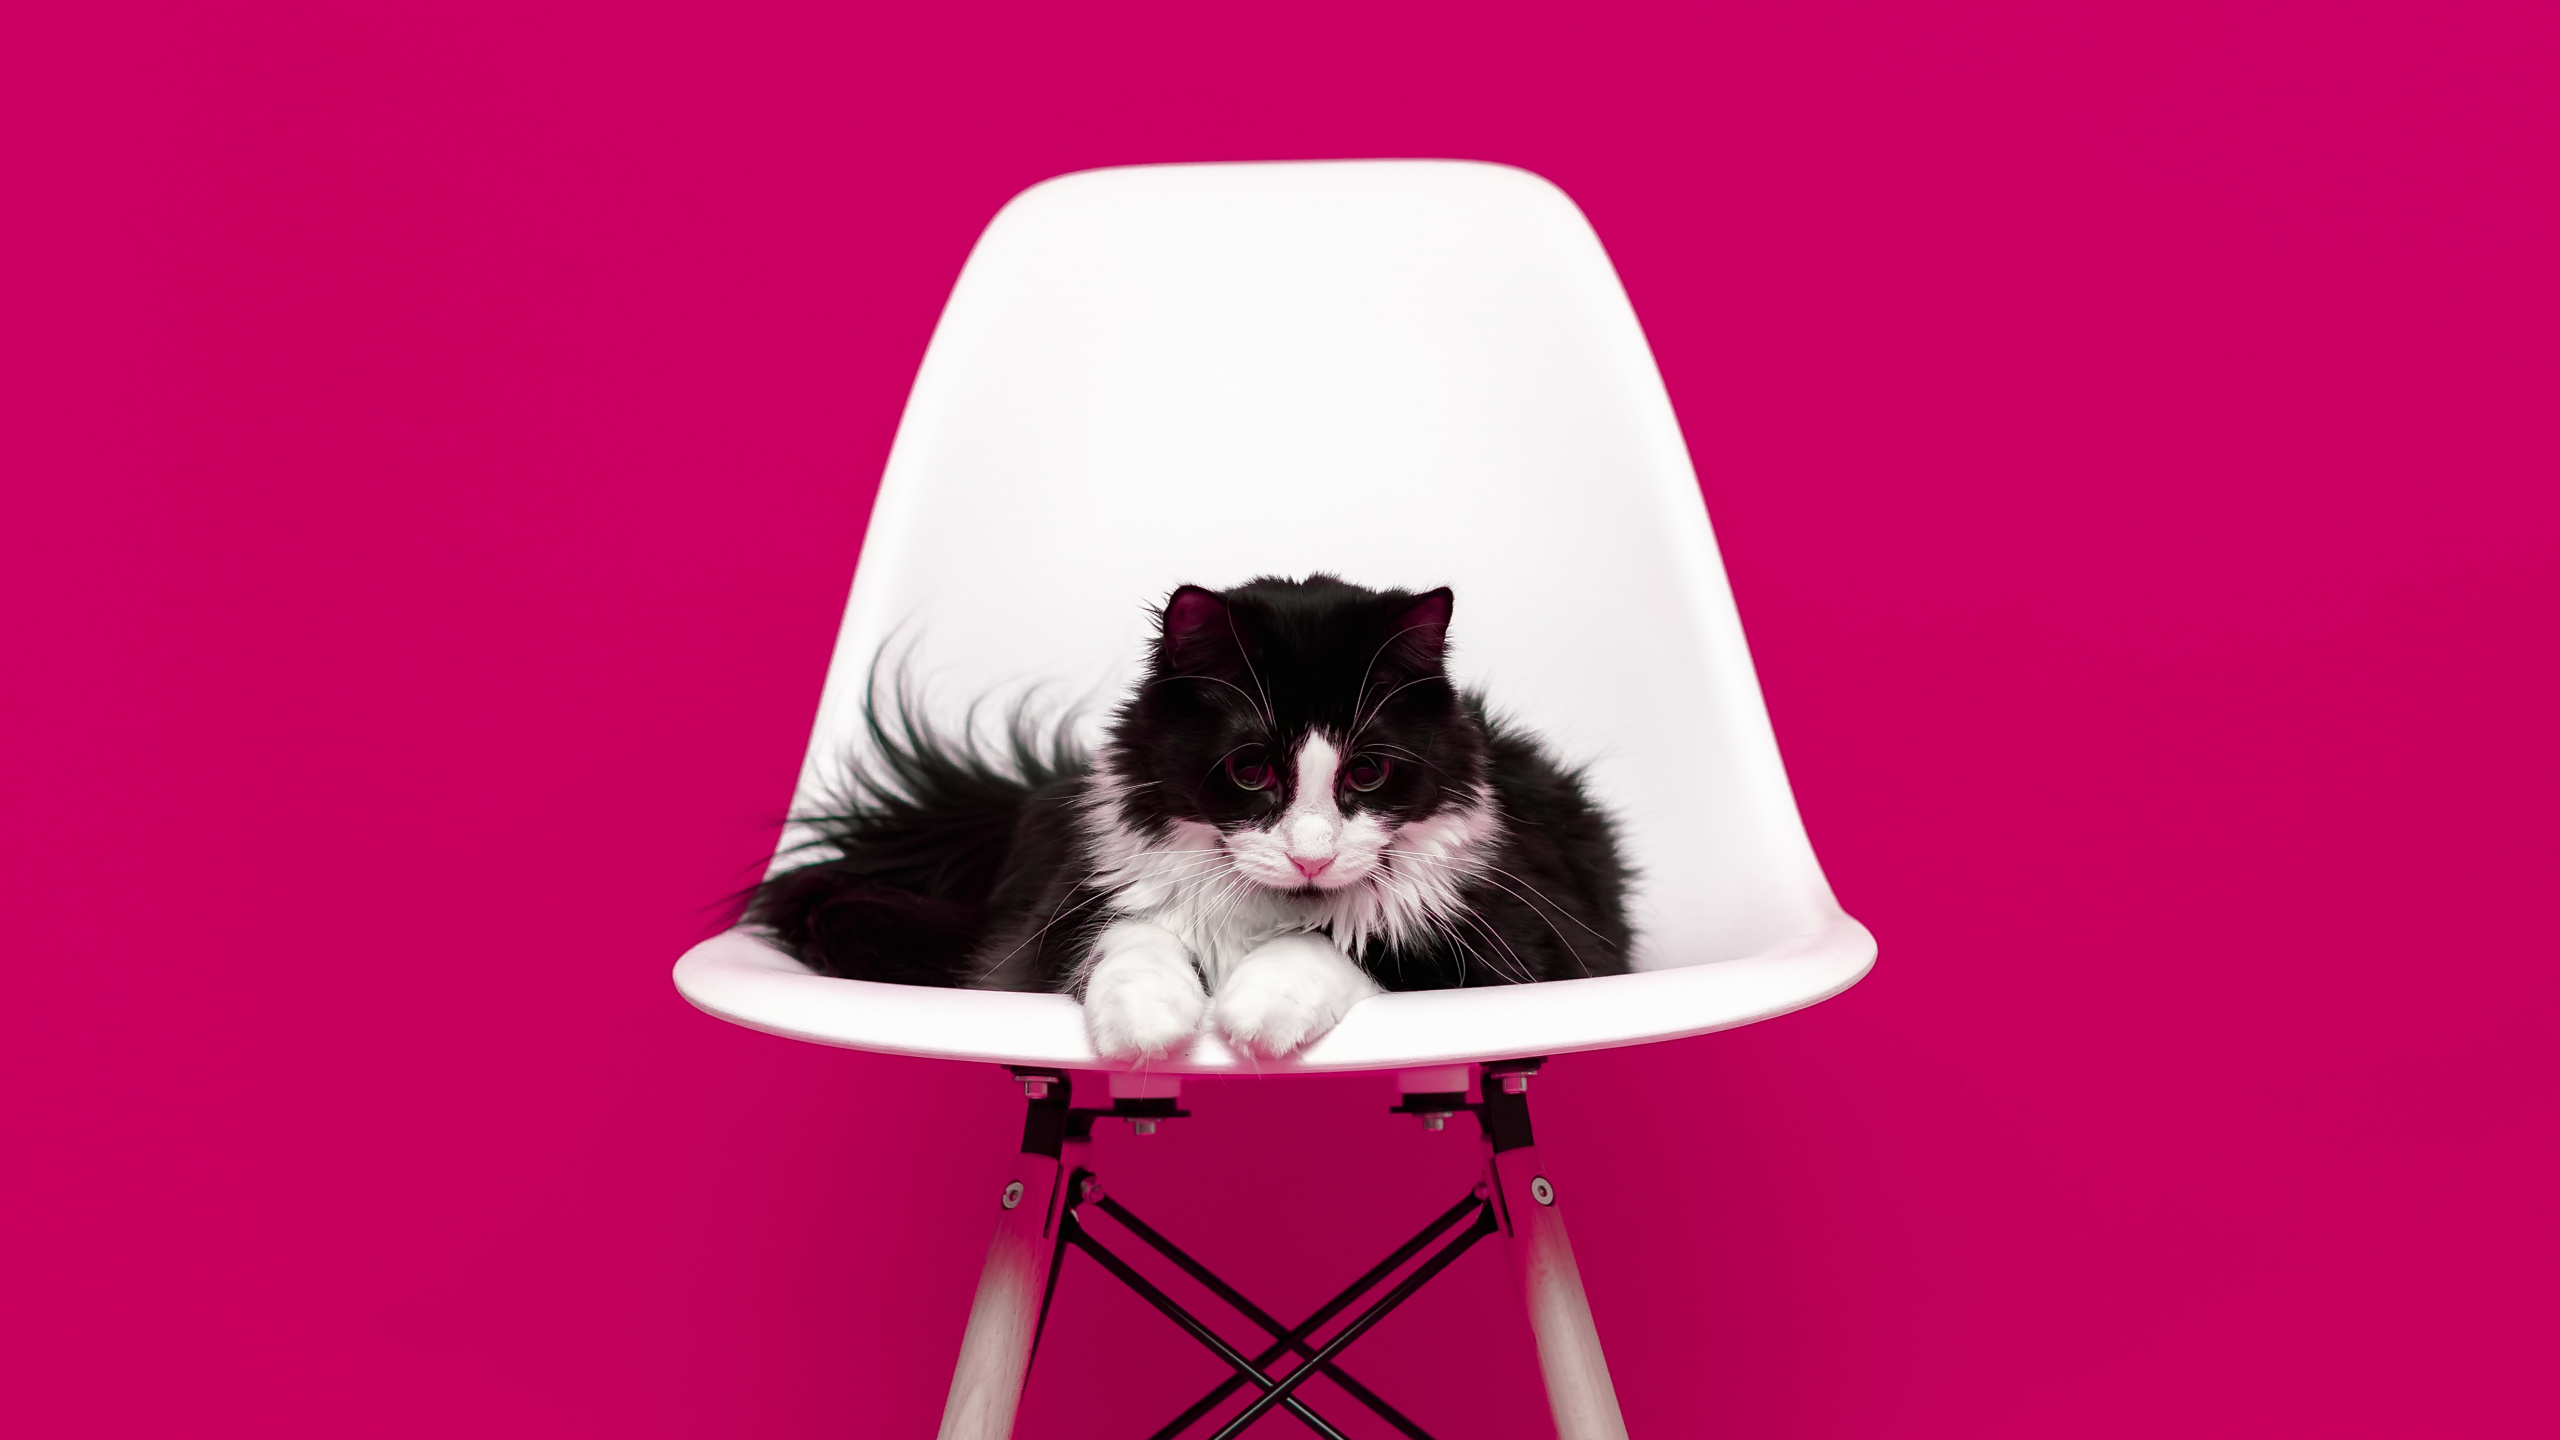 粉红色, 家具, 品红色, 椅子, 猫科 壁纸 2560x1440 允许